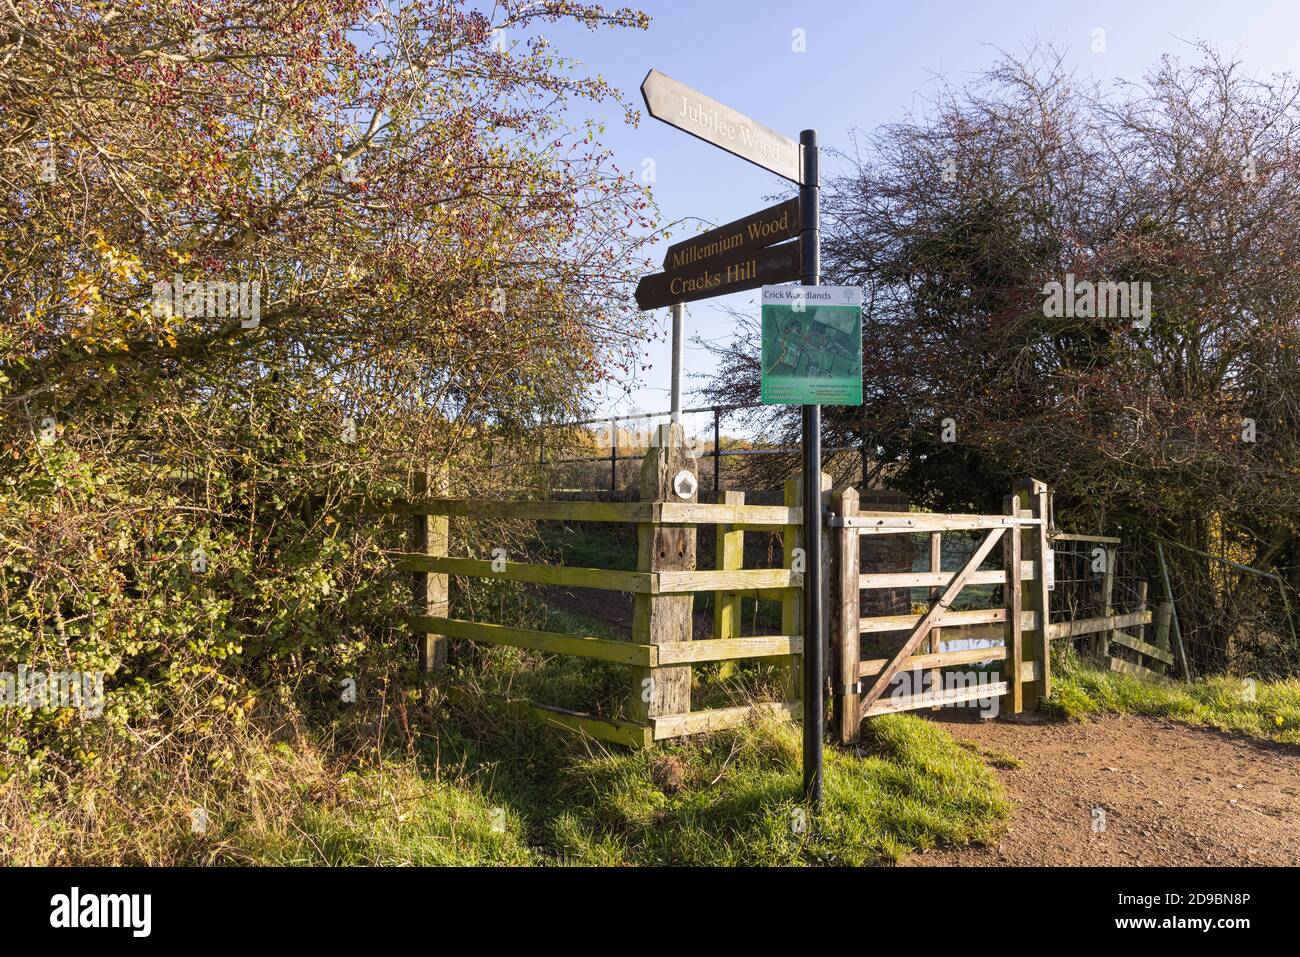 Crick, Northamptonshire - 4/11/20: Ein Metallschild an einem Tor auf einem Fußweg zeigt Anweisungen zu verschiedenen Teilen eines öffentlichen Freiraums. Stockfoto